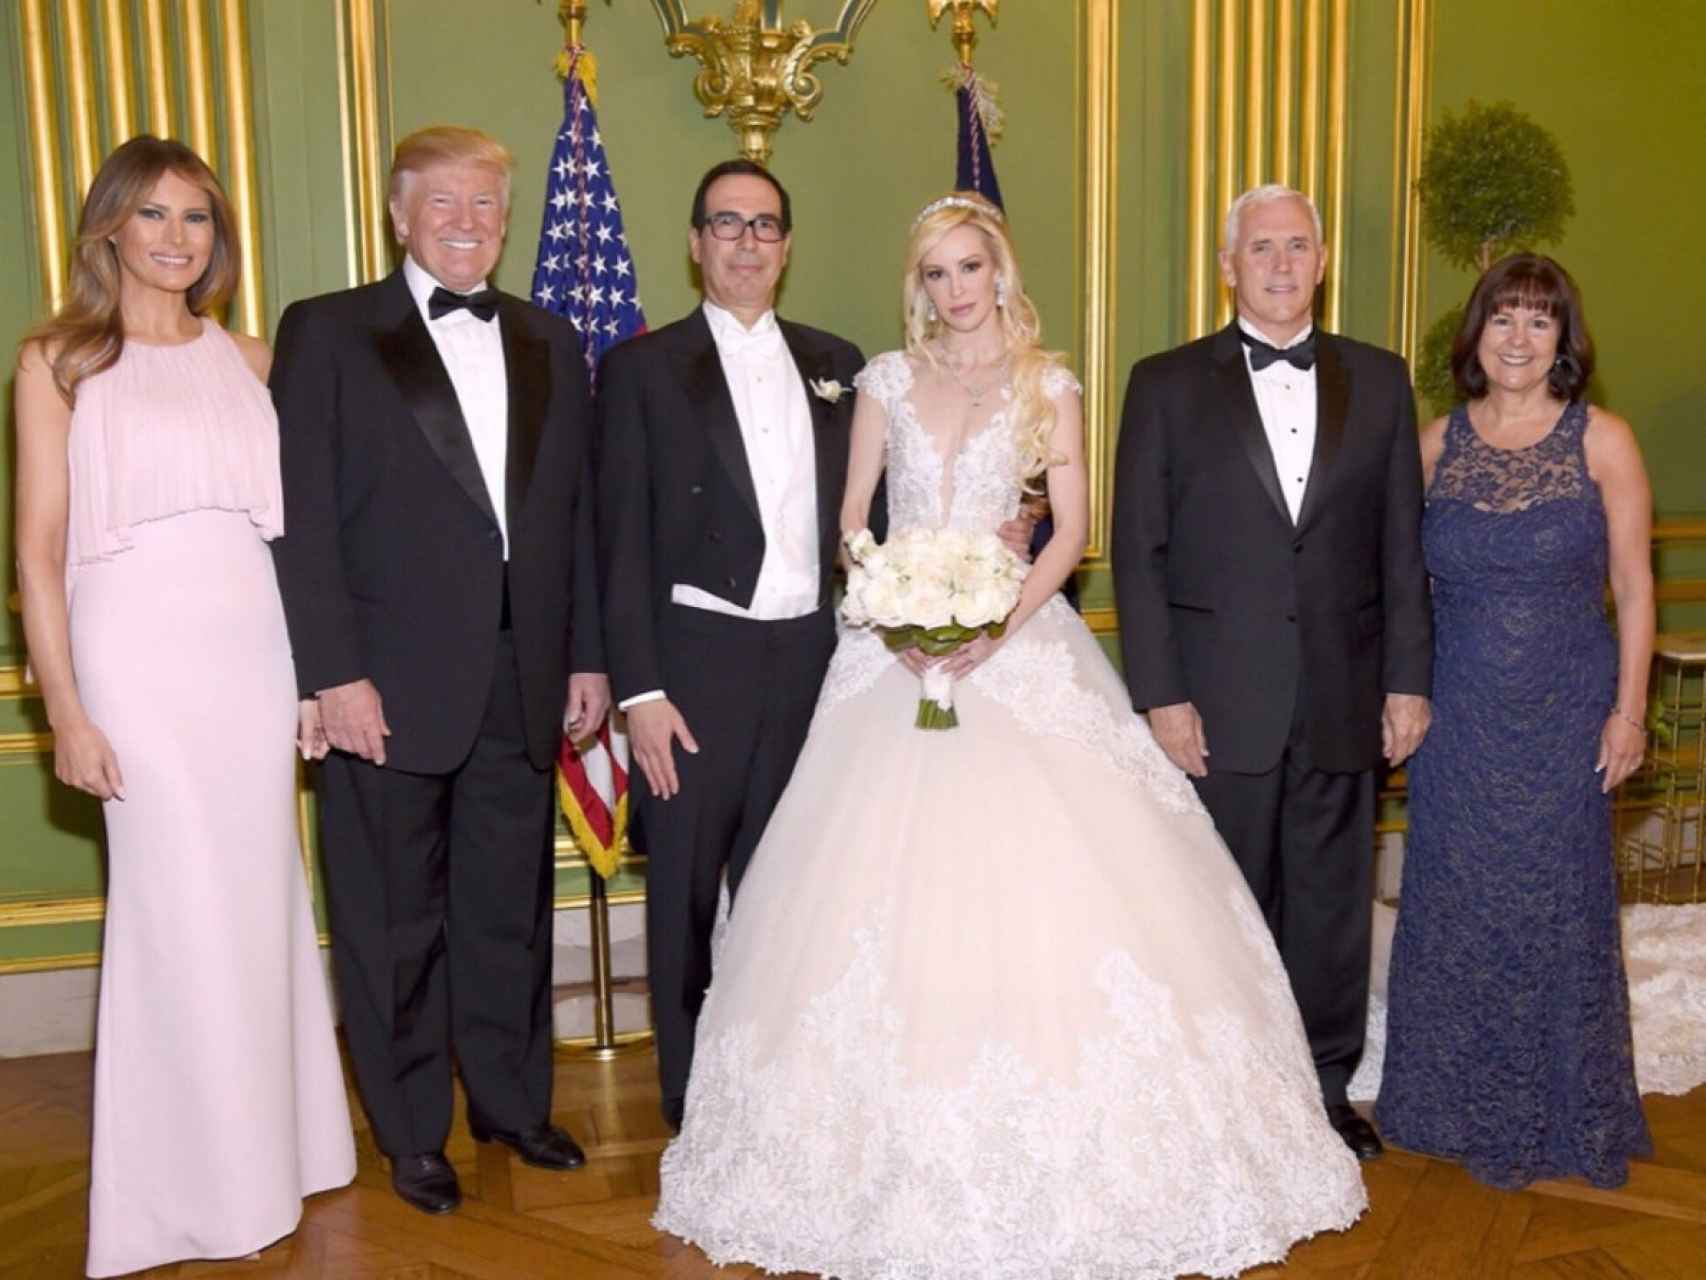 El matrimonio, el pasado mes de junio en su boda, a la que acudieron los Trump.